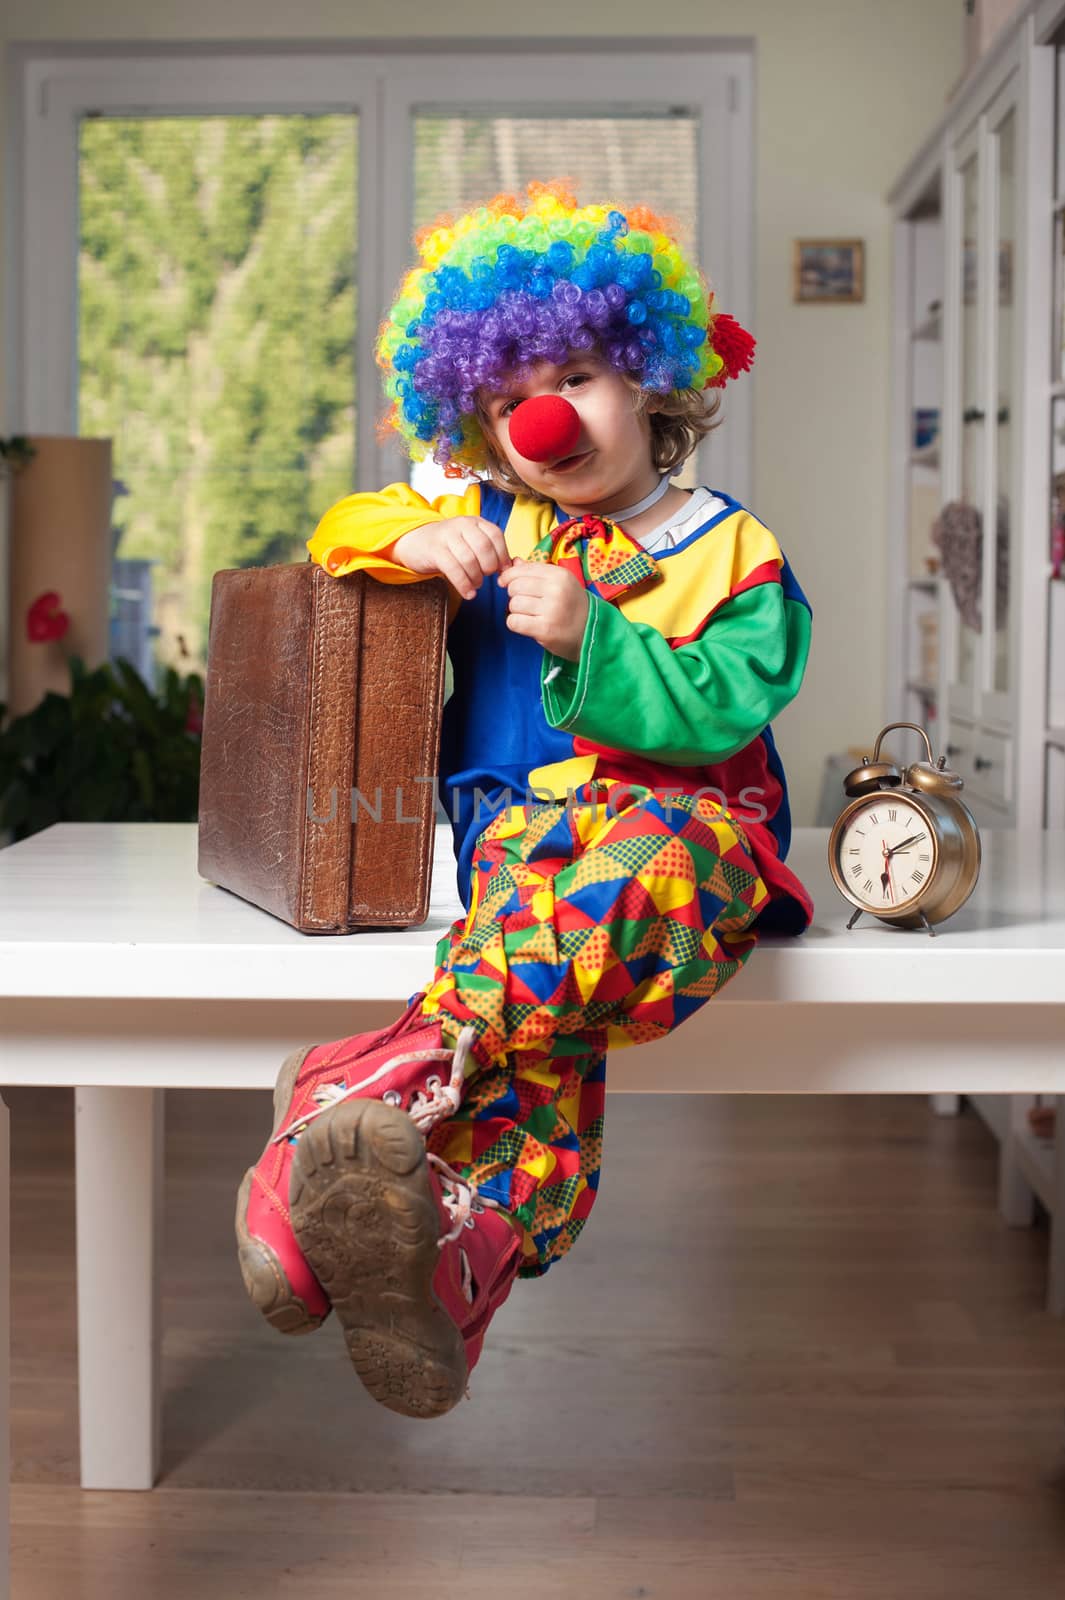 Little boy dressed as clown by kaliantye